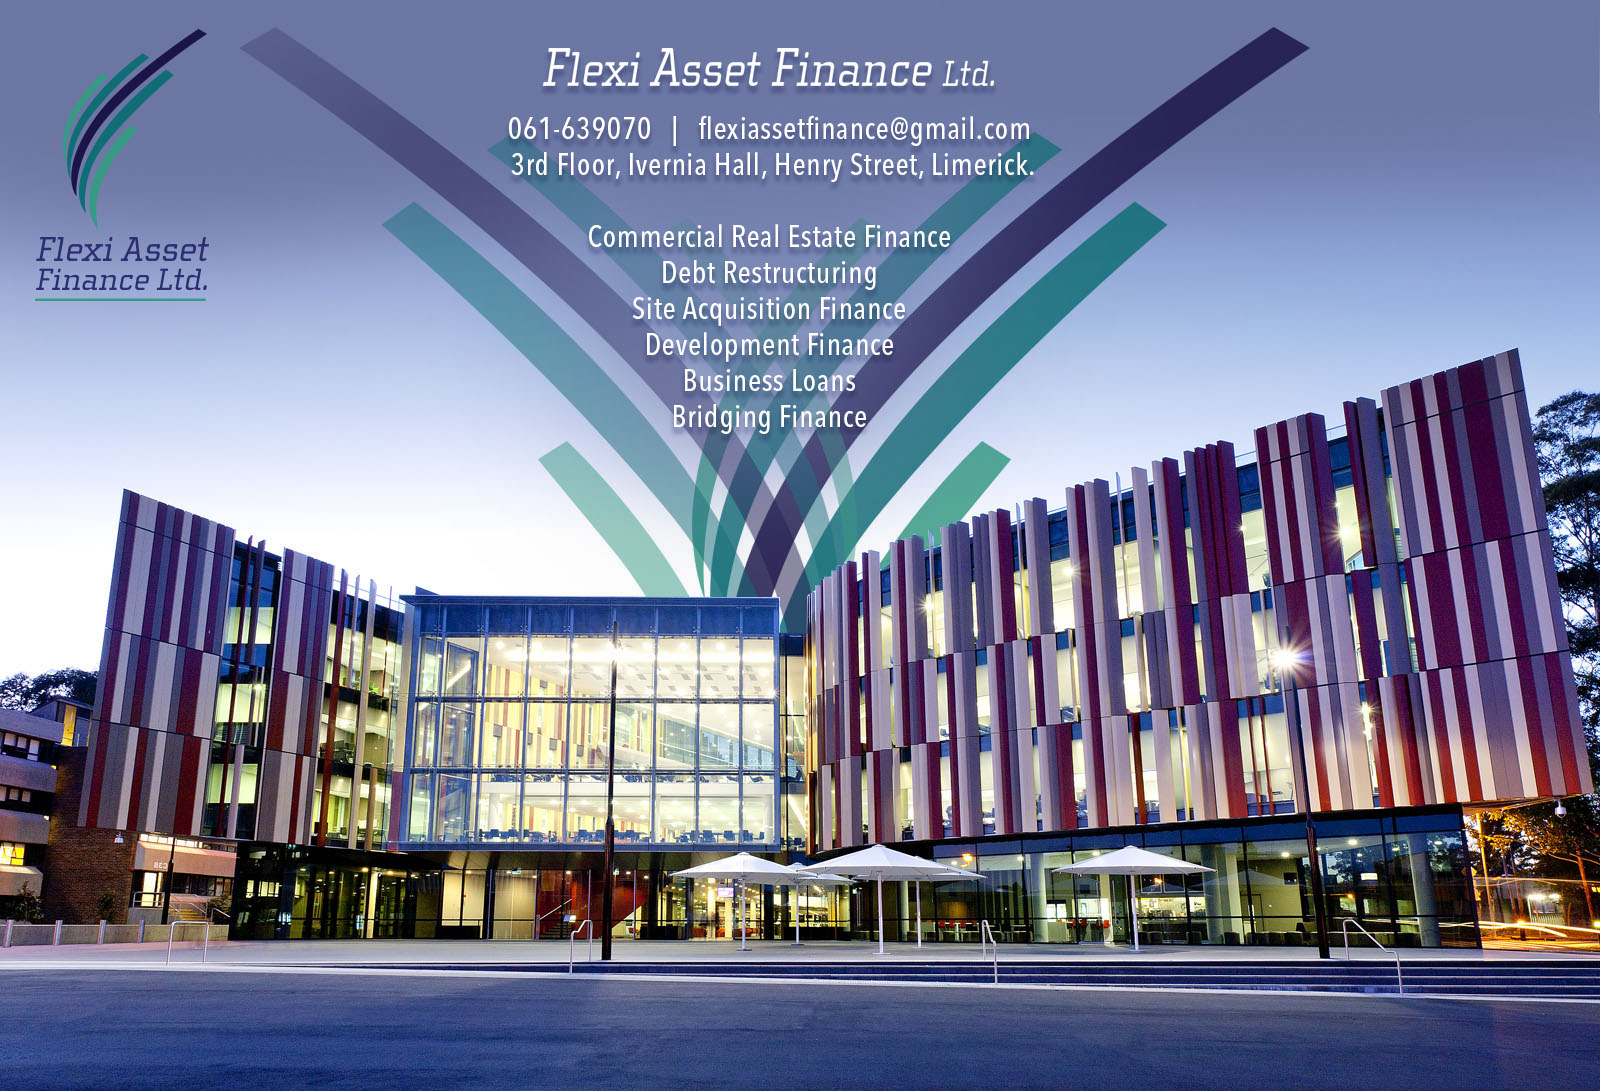 Flexi Asset Finance Limited